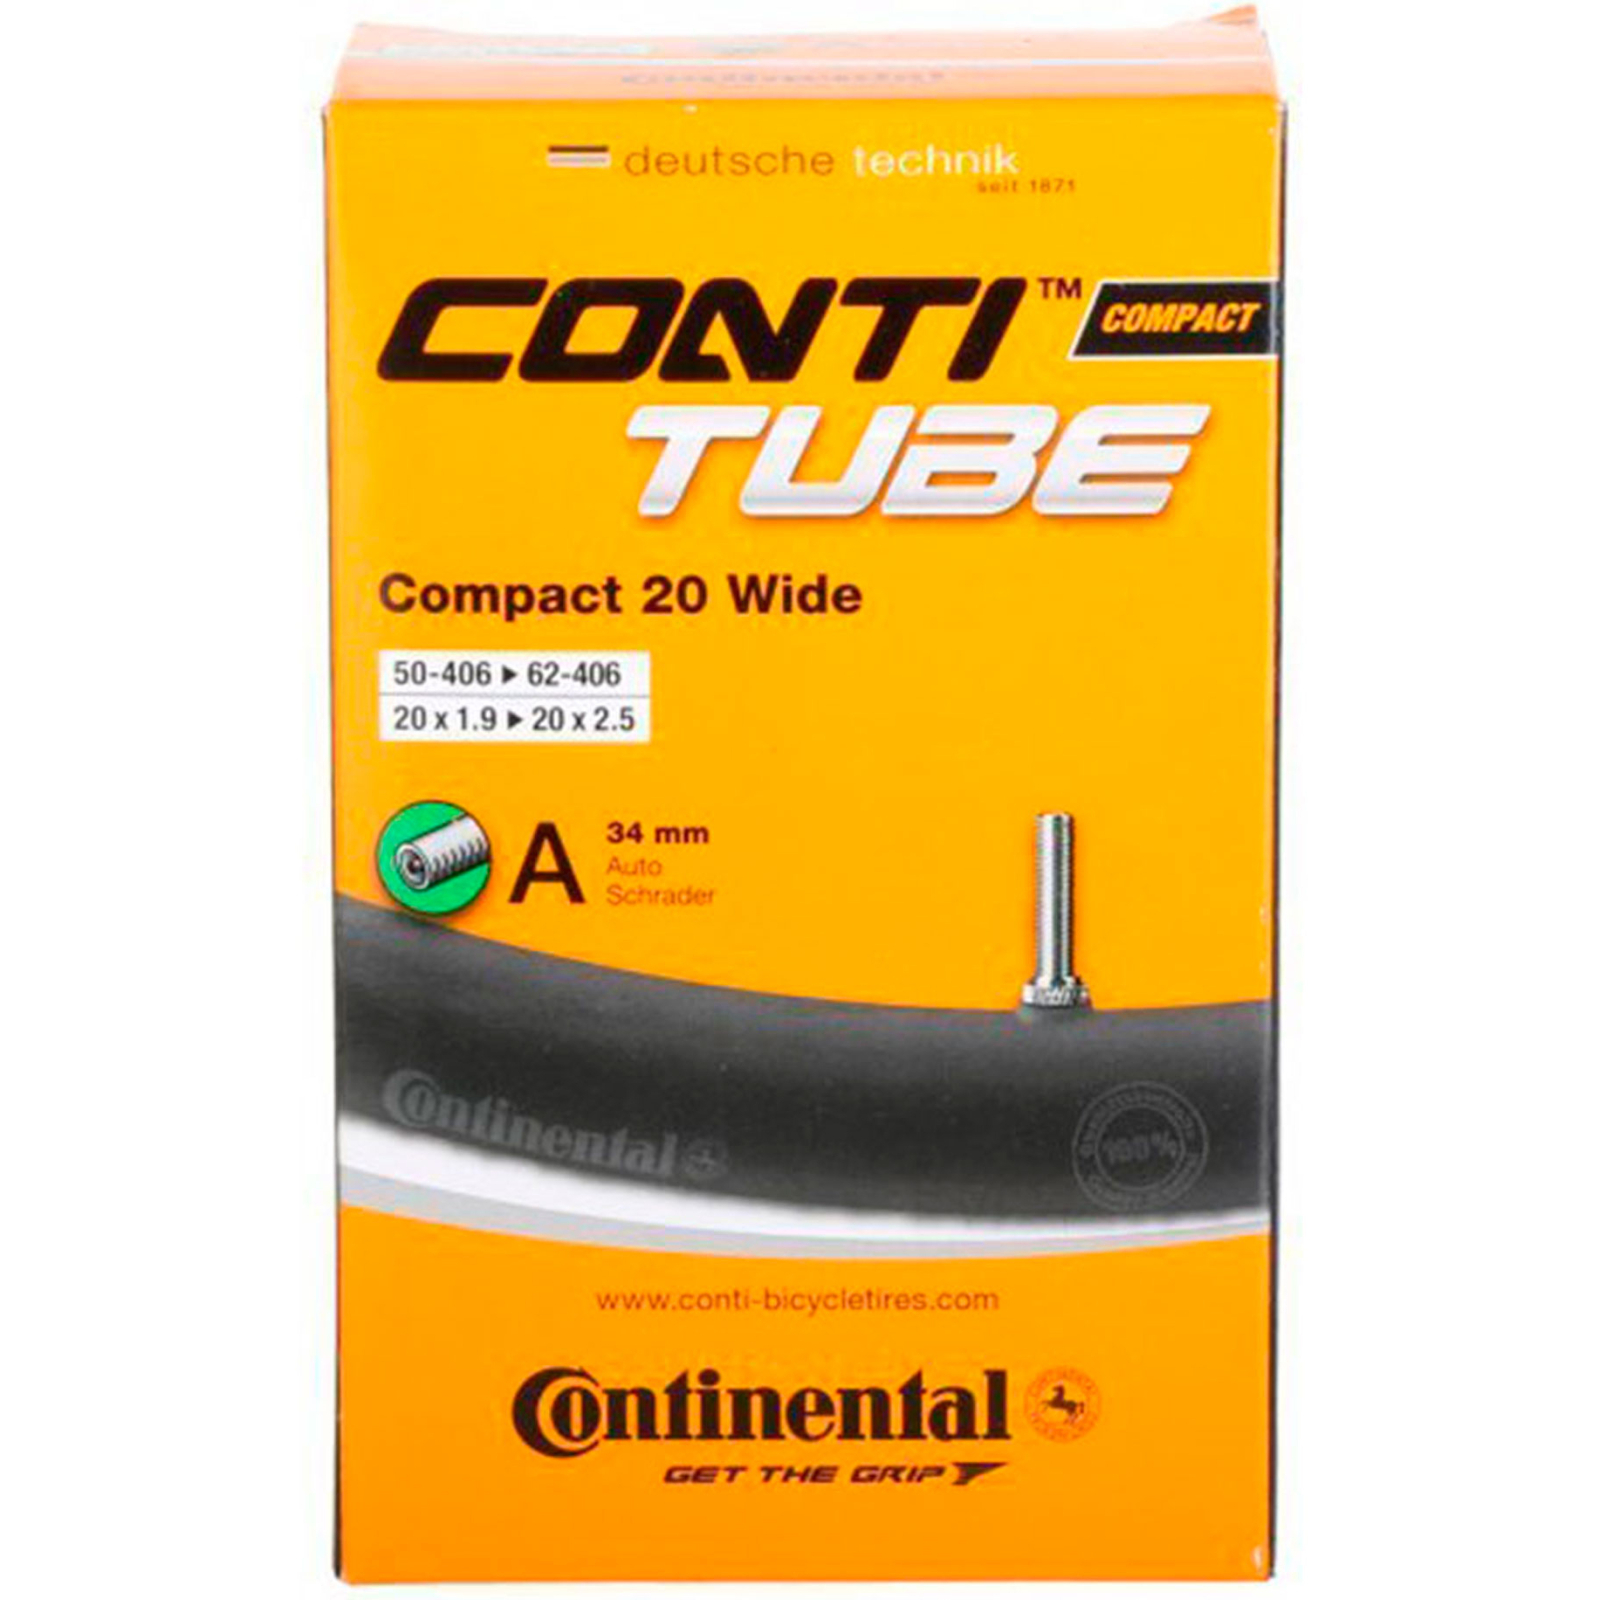 Велосипедная камера Continental Compact 20"x1.9-2.5 wide 50-406 / 62-451 RE AV34mm (181271)